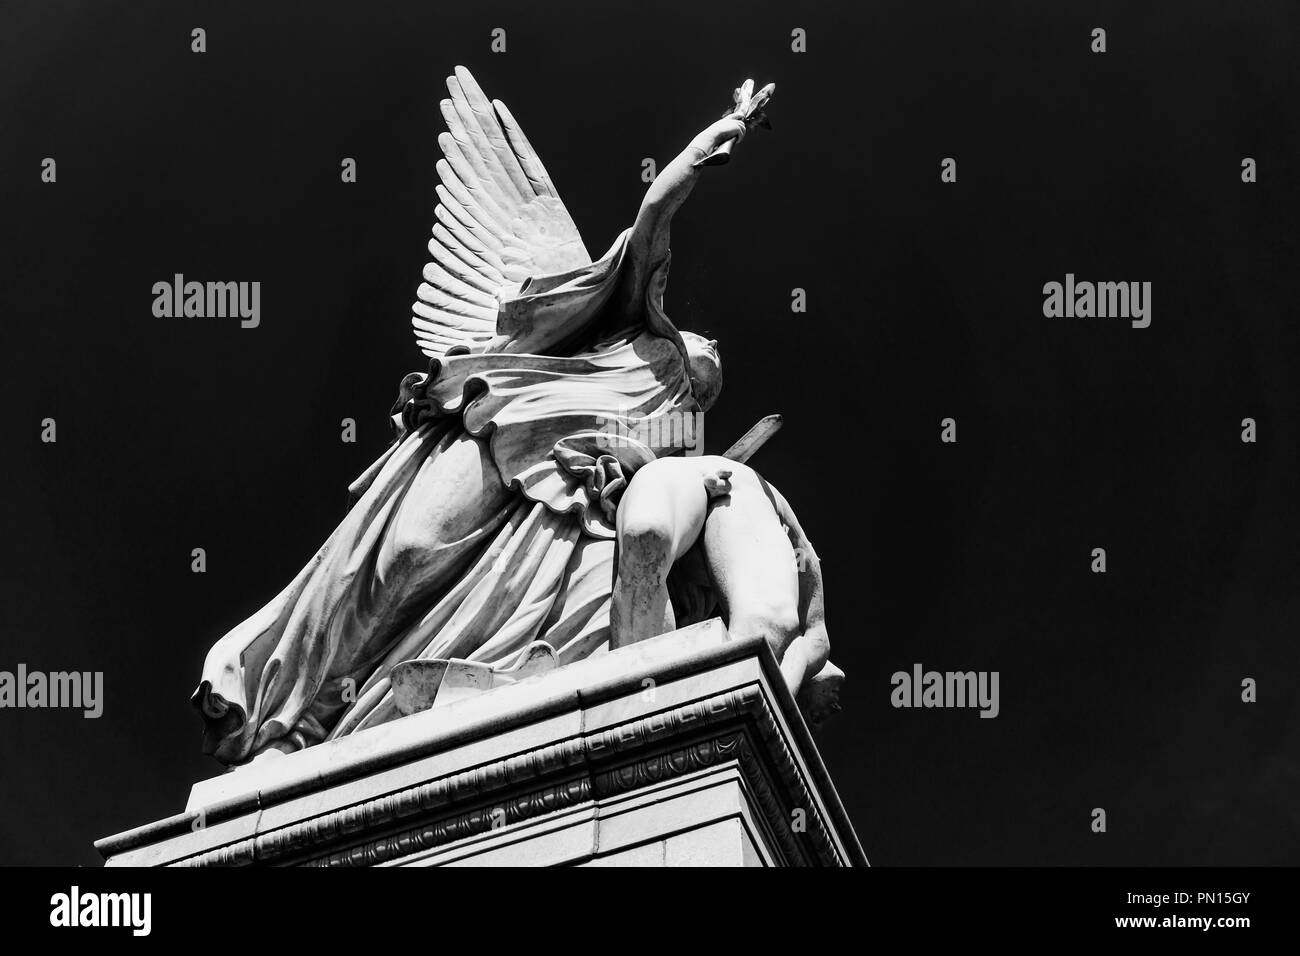 Berlino, Germania, 28 Luglio 2018: Drammatico angolo di scultura di Nike - dea greca della Vittoria - Prende l'eroe caduto per Olympus su Schloss ponte mediante Foto Stock